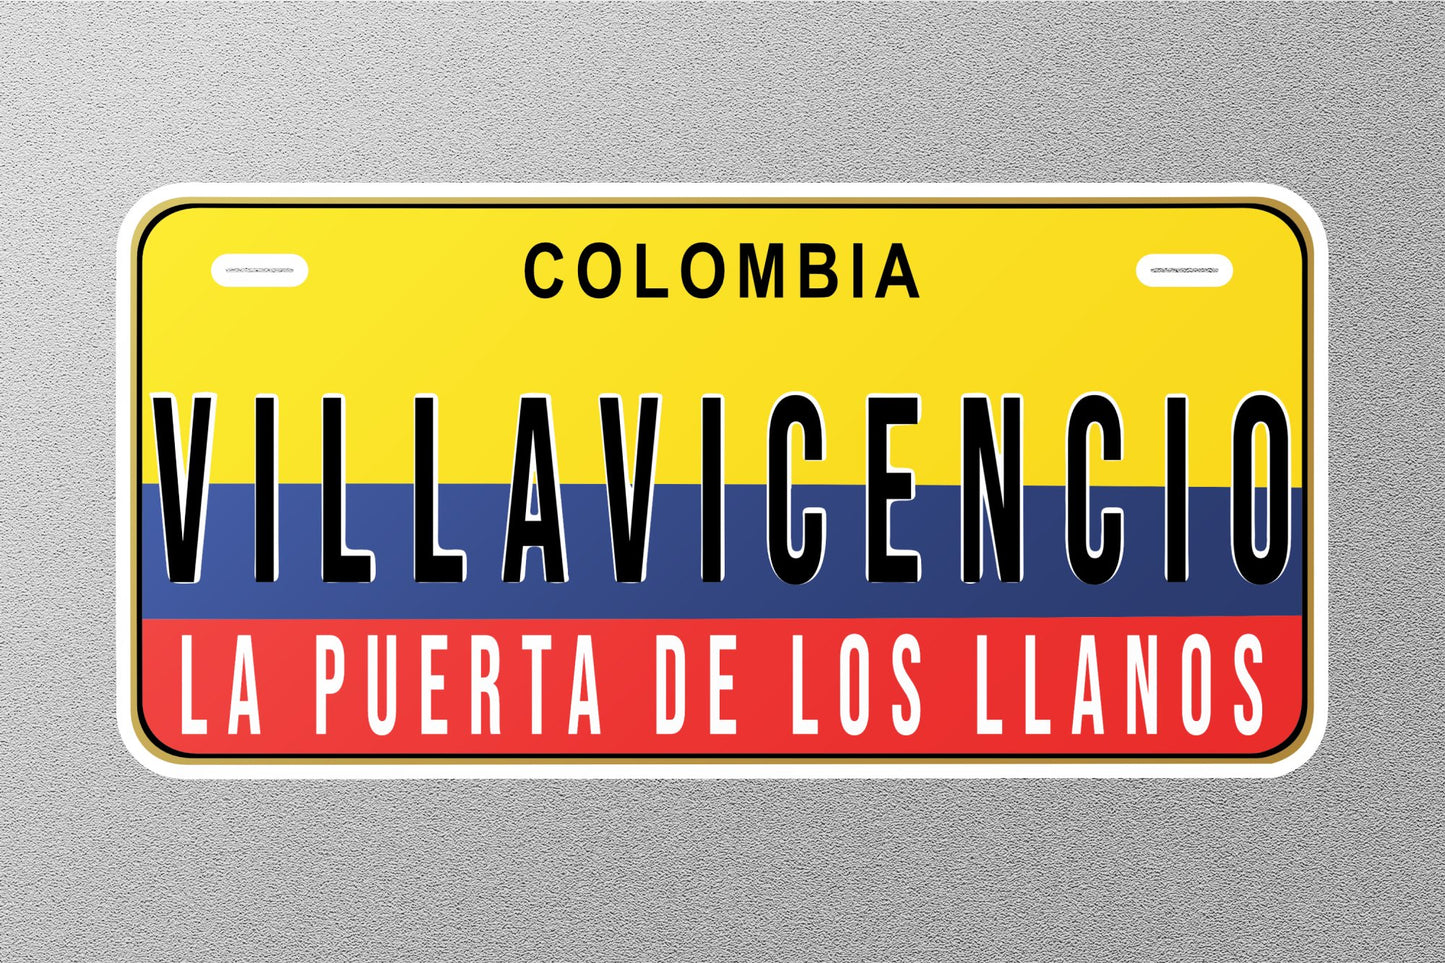 Villavicencio Colombia License Plate Sticker